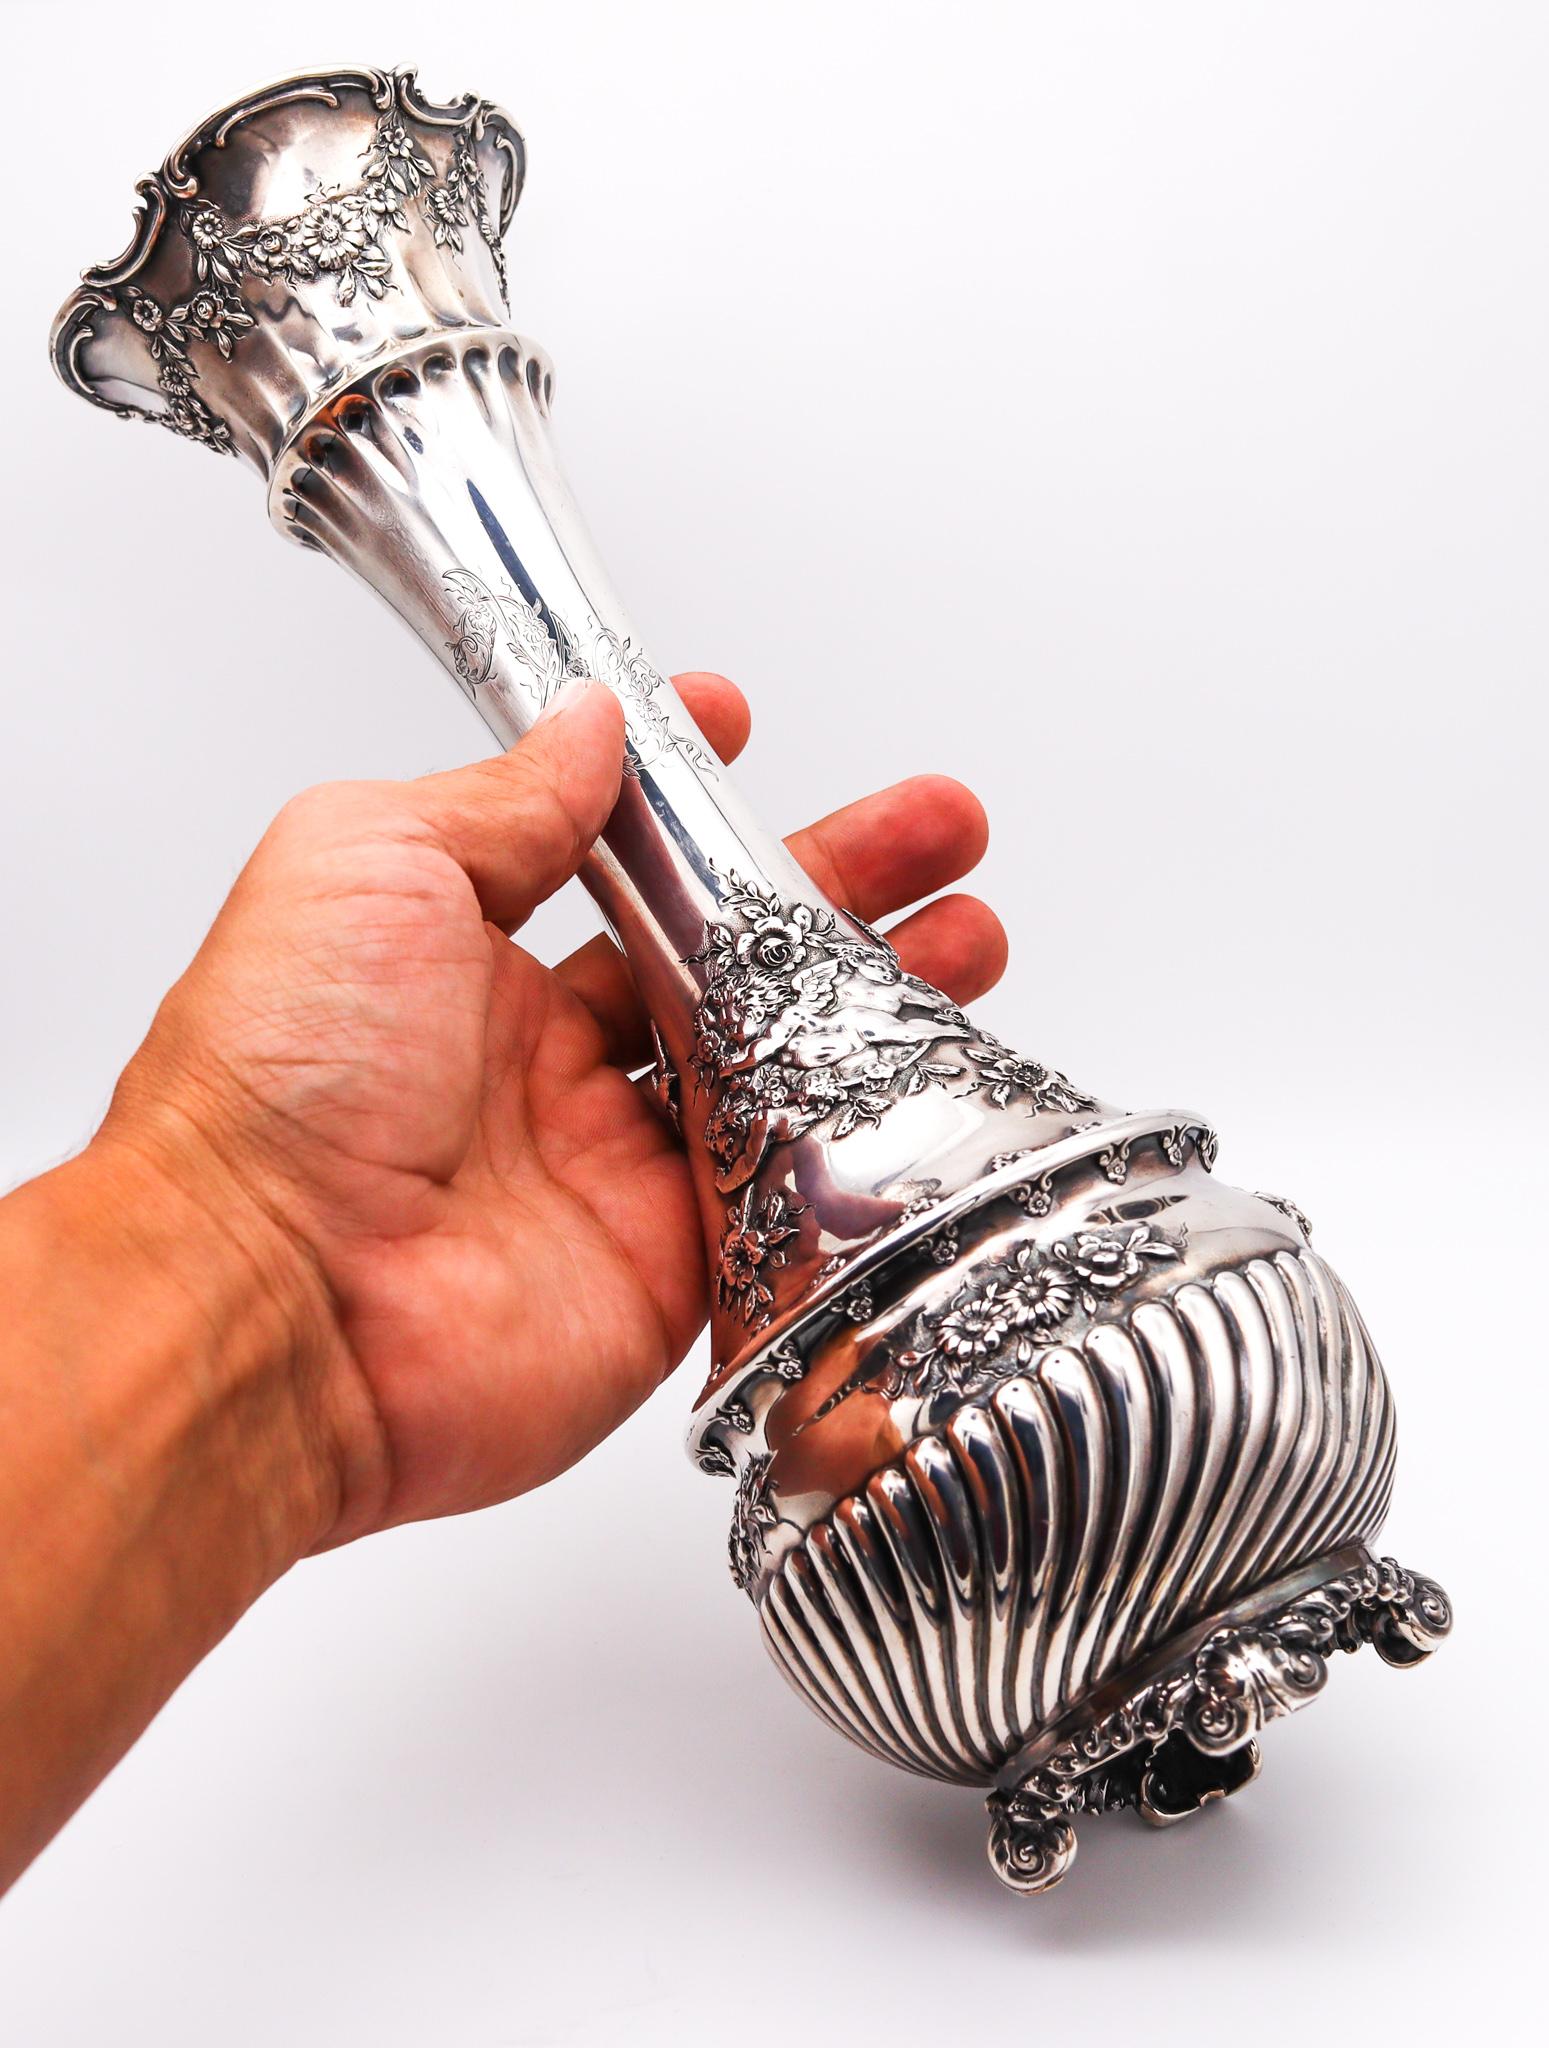 Trompetenförmige Vase, entworfen von Tiffany & Co.

Schöne antike Trompetenvase aus den Tiffany Studios in New York City, zwischen 1900 und 1901. Dieses Modell wurde unter dem Vorsitz von Charles L. Tiffany in der Übergangszeit vom Ende des